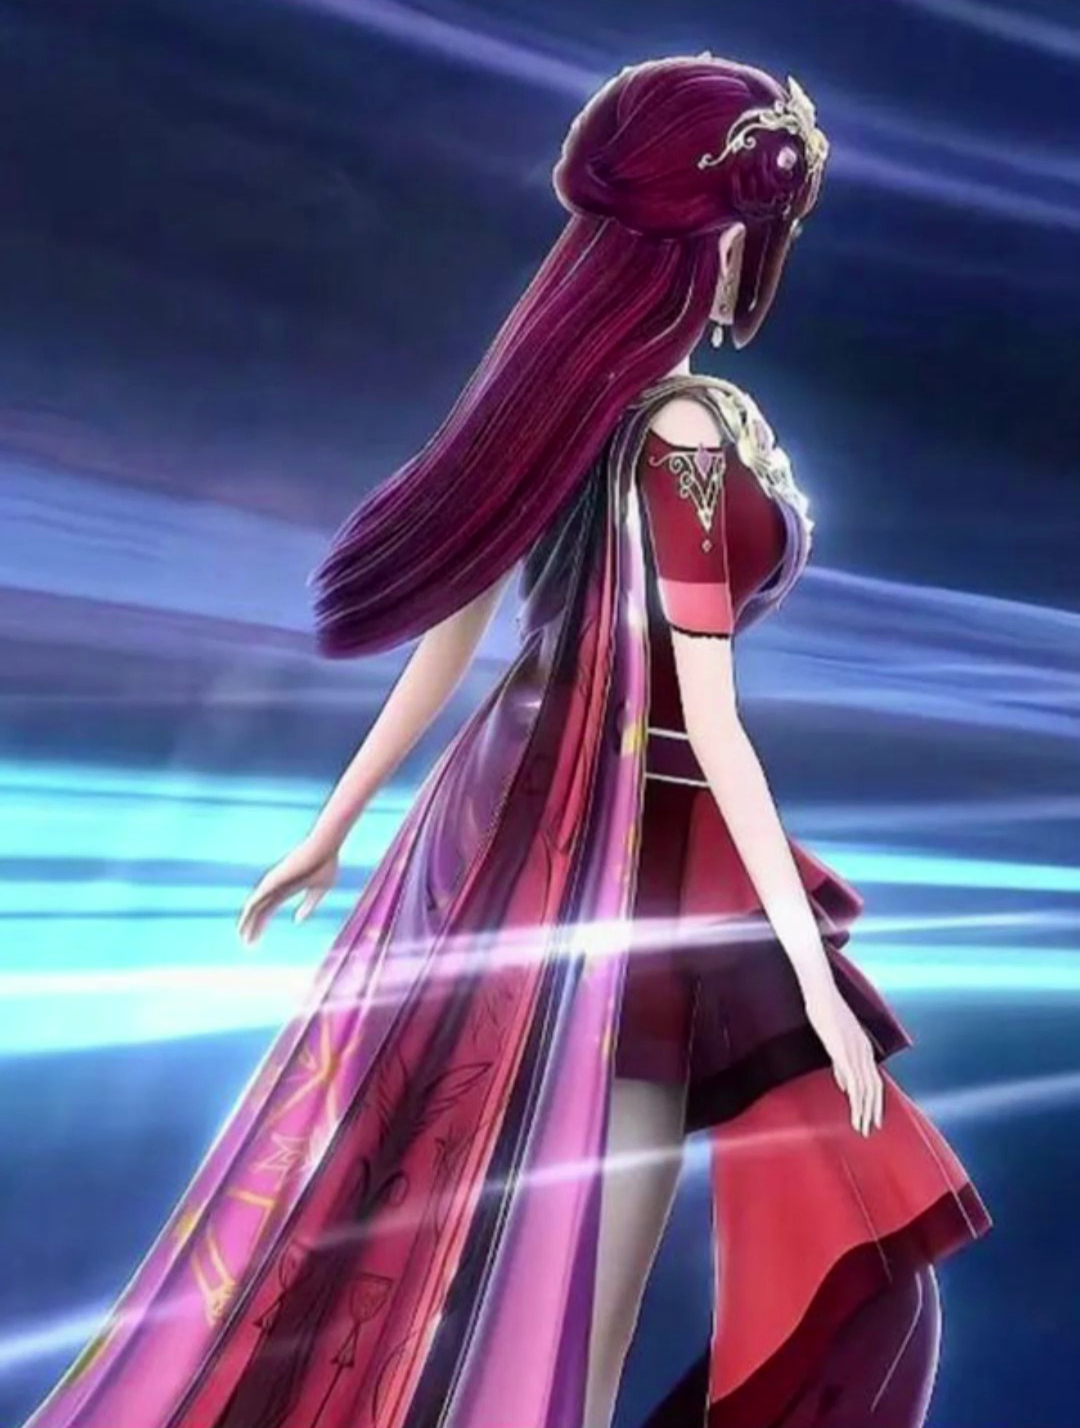 精灵梦叶罗丽:红色的头发,红色的裙子,看背影猜角色